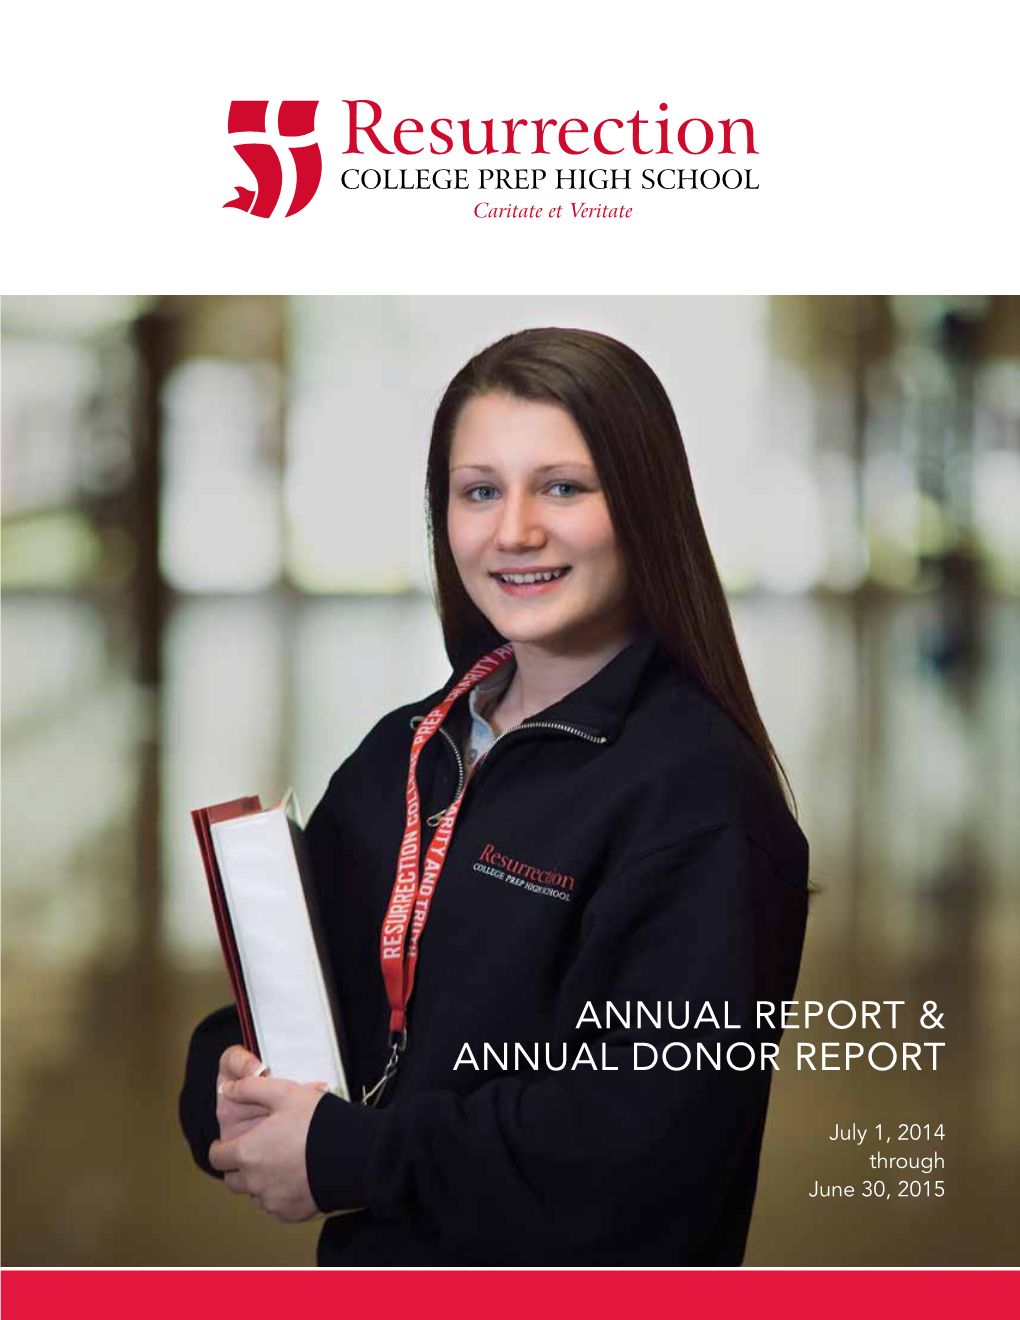 Annual Report & Annual Donor Report